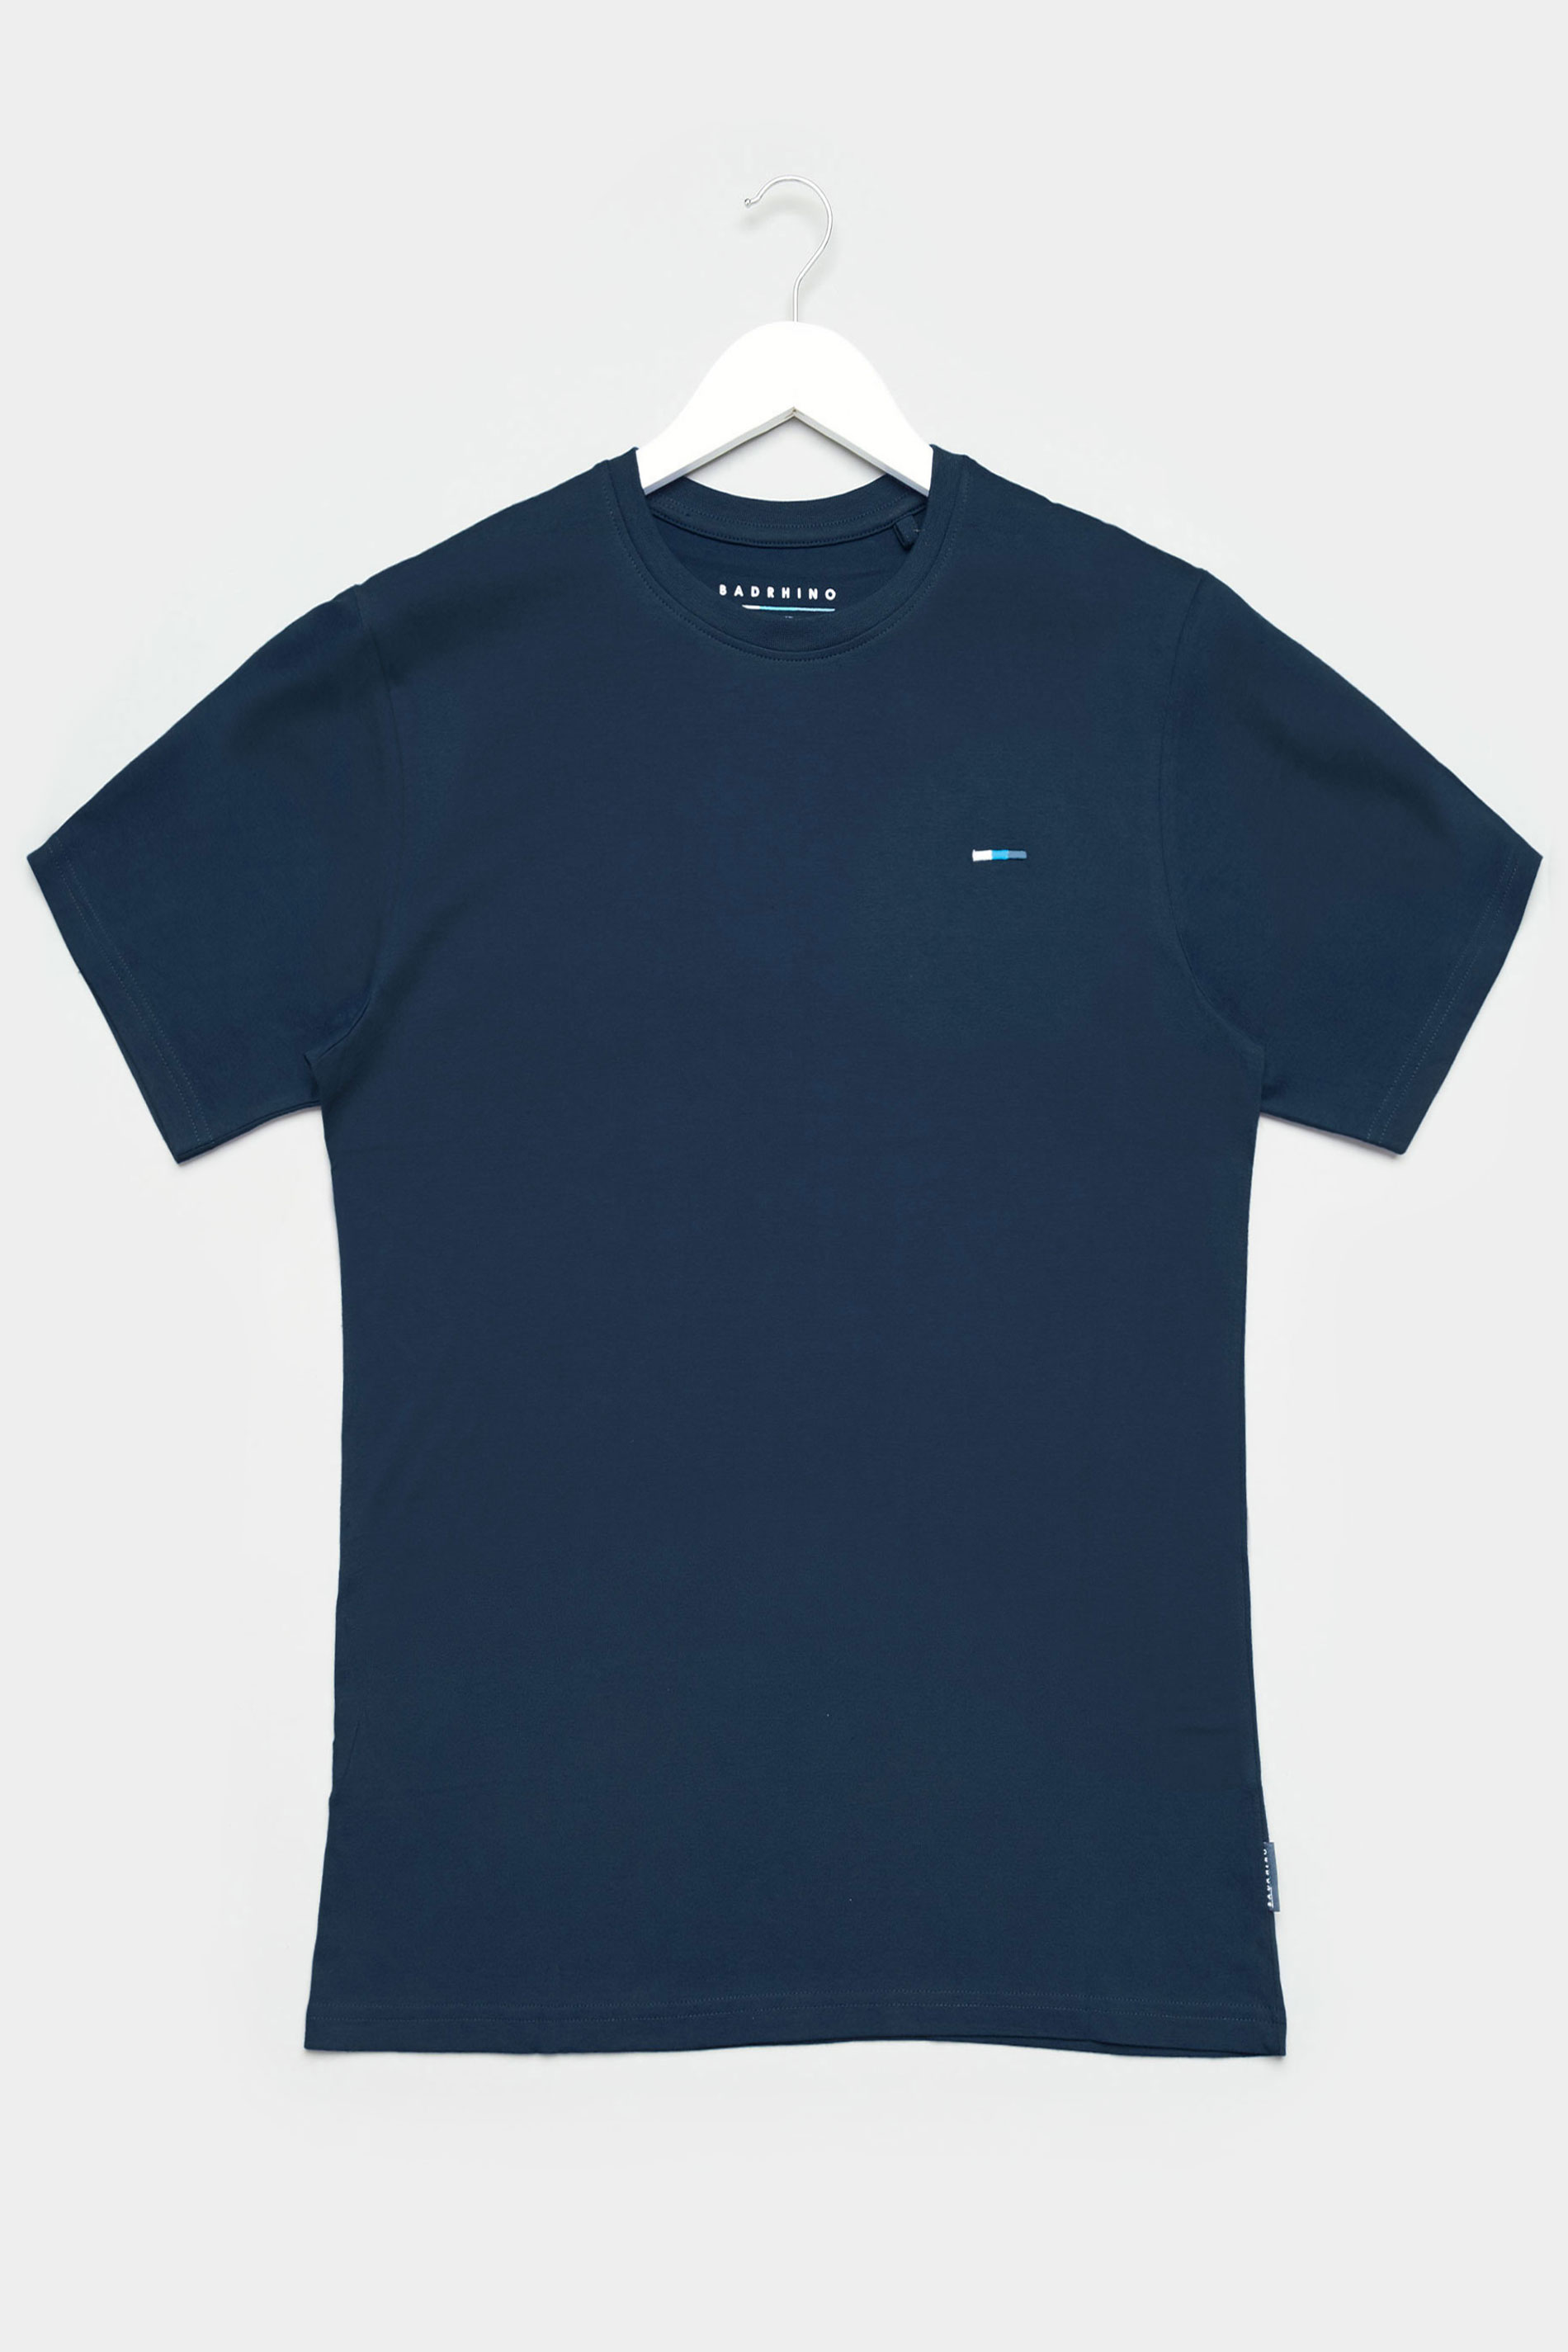 BadRhino Big & Tall Navy Blue Recycled Plain T-Shirt_F.jpg